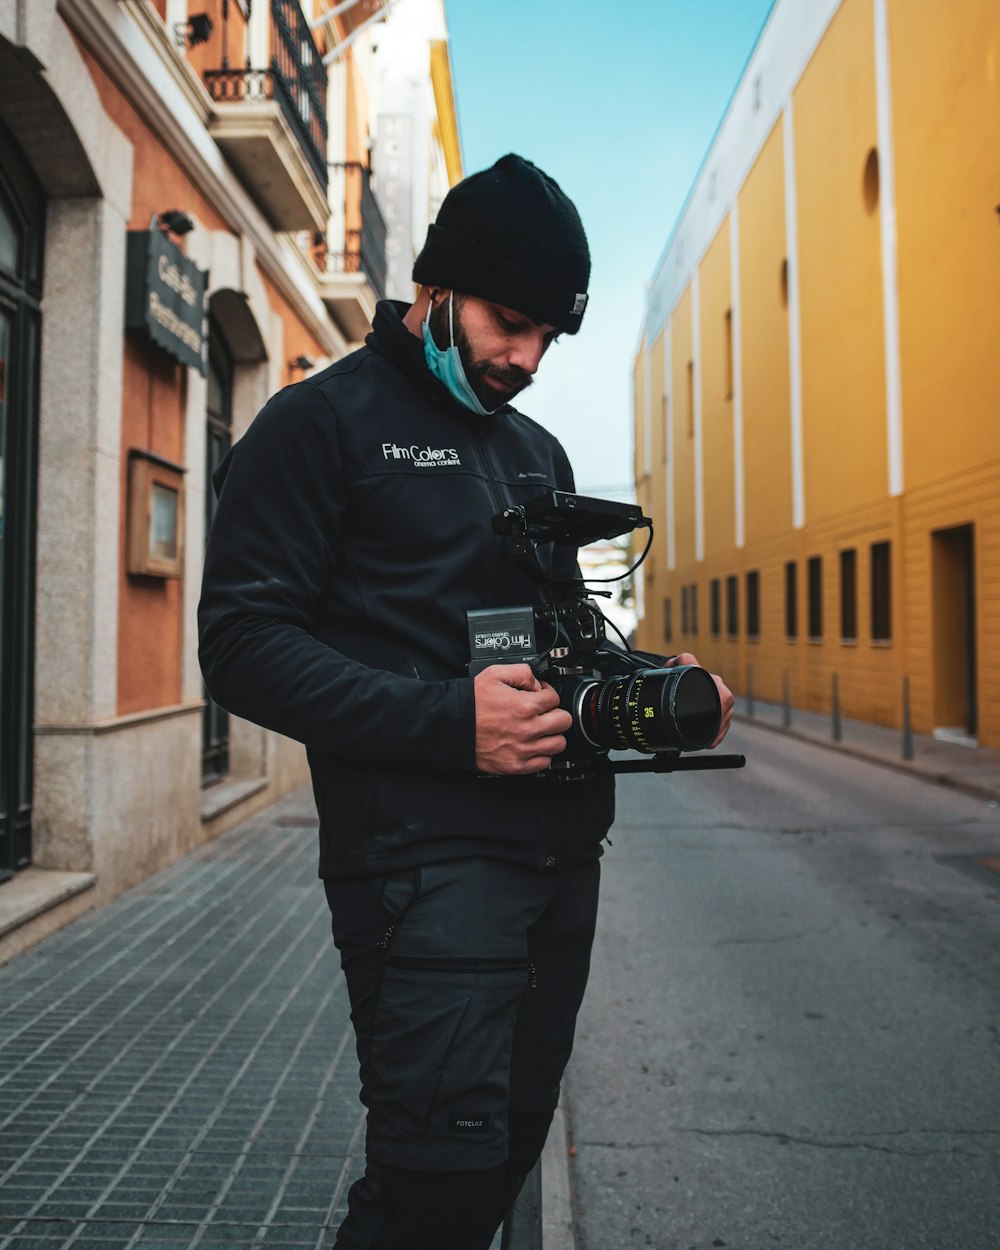 Un hombre parado en una calle sosteniendo una cámara